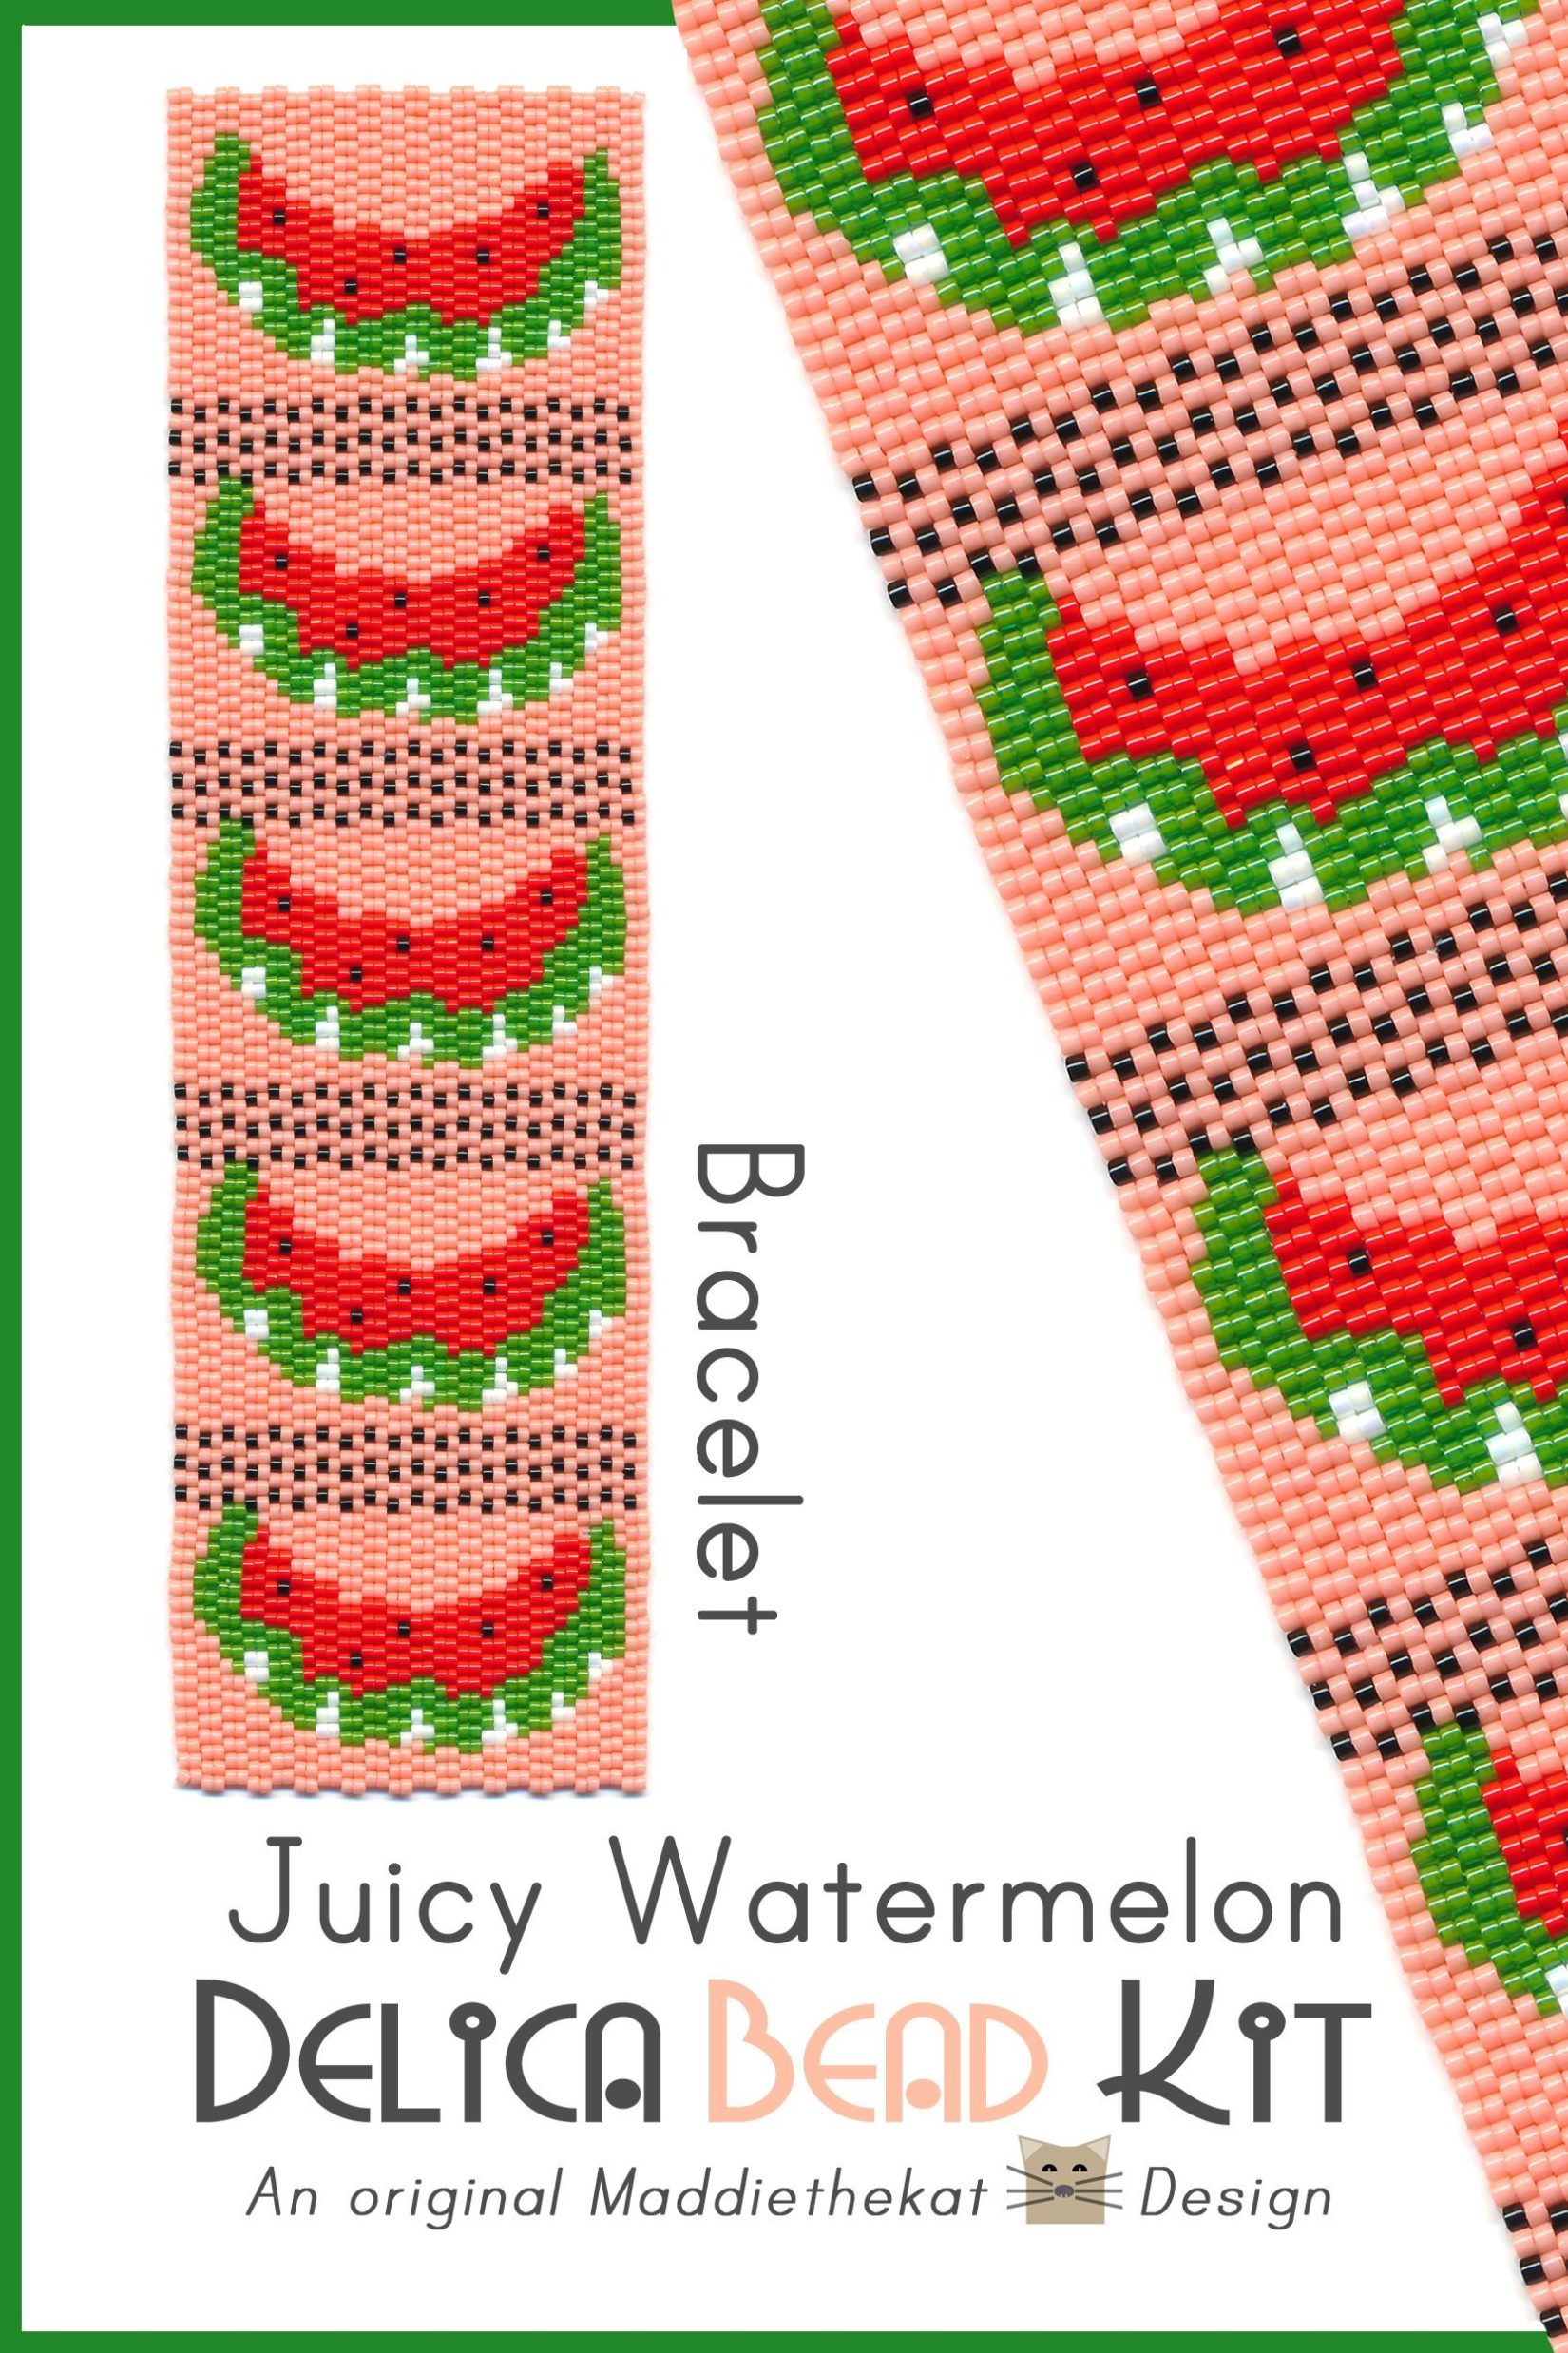 Juicy Watermelon Wide Cuff Bracelet 2-Drop Peyote Bead Pattern or Bead Kit